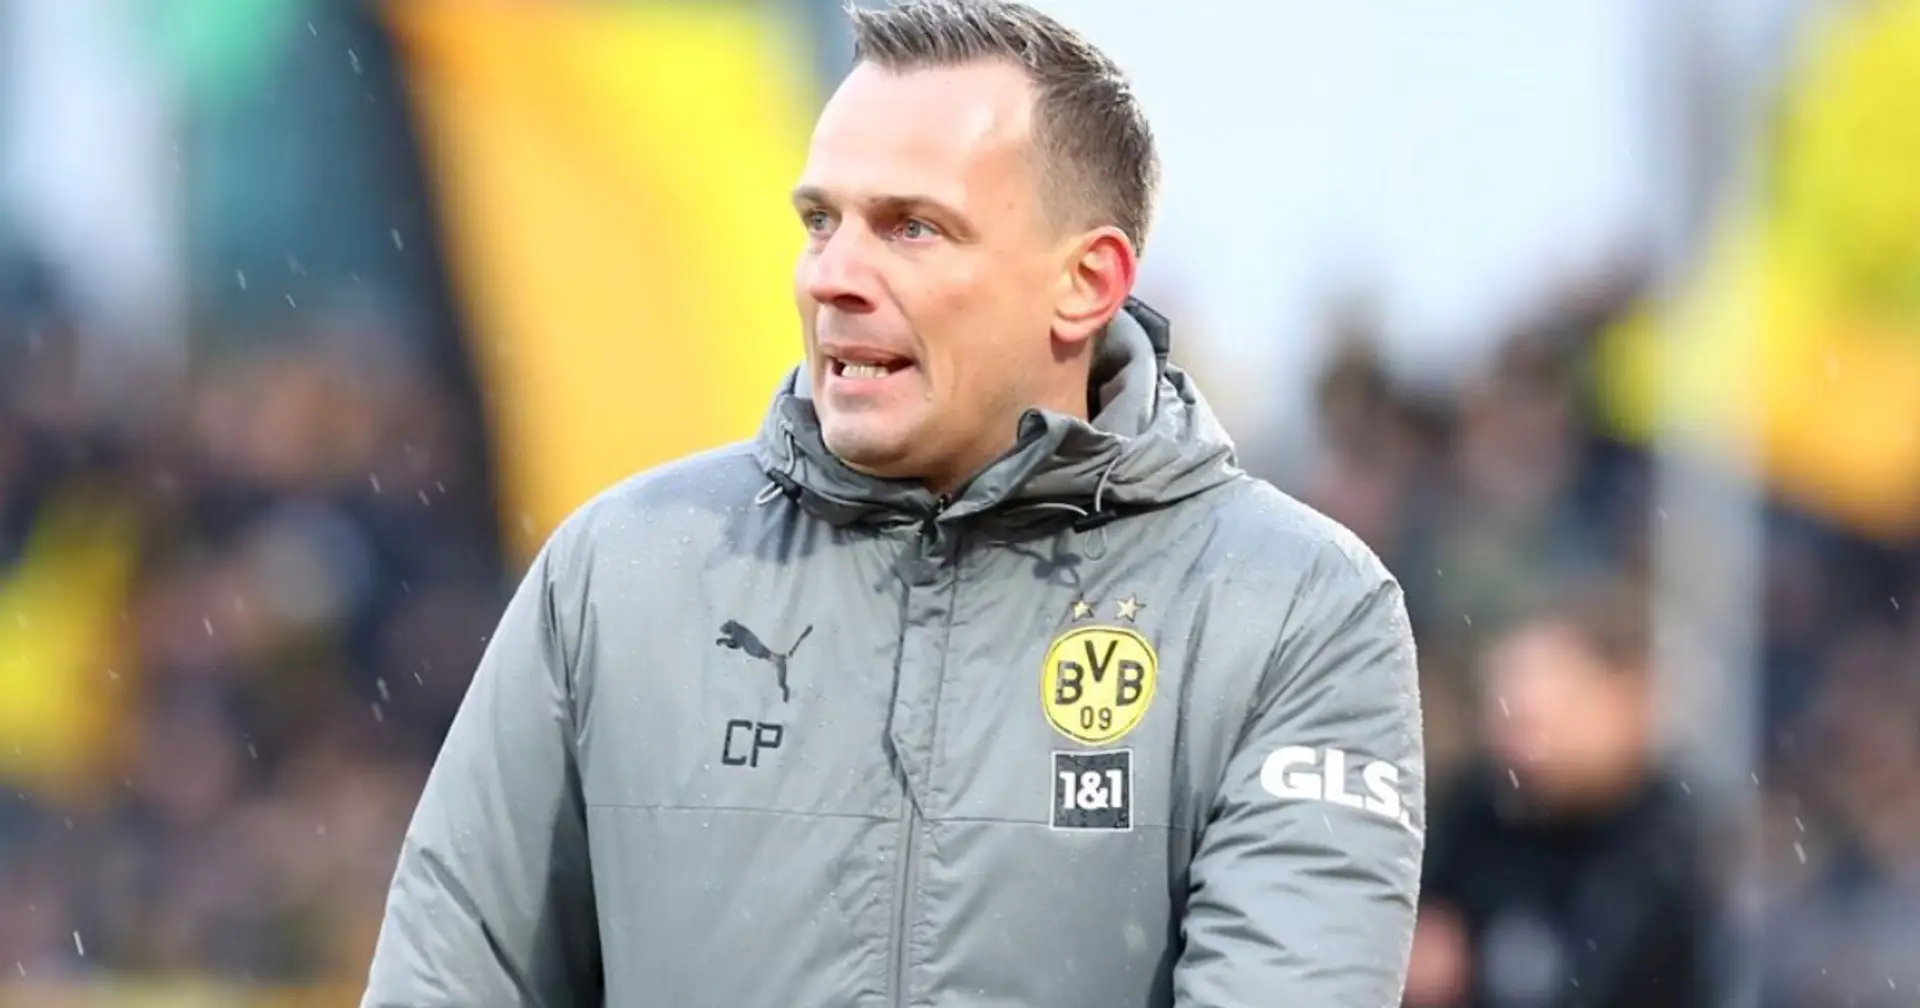 OFFIZIELL: BVB-U23 stellt Cheftrainer Christian Preußer frei